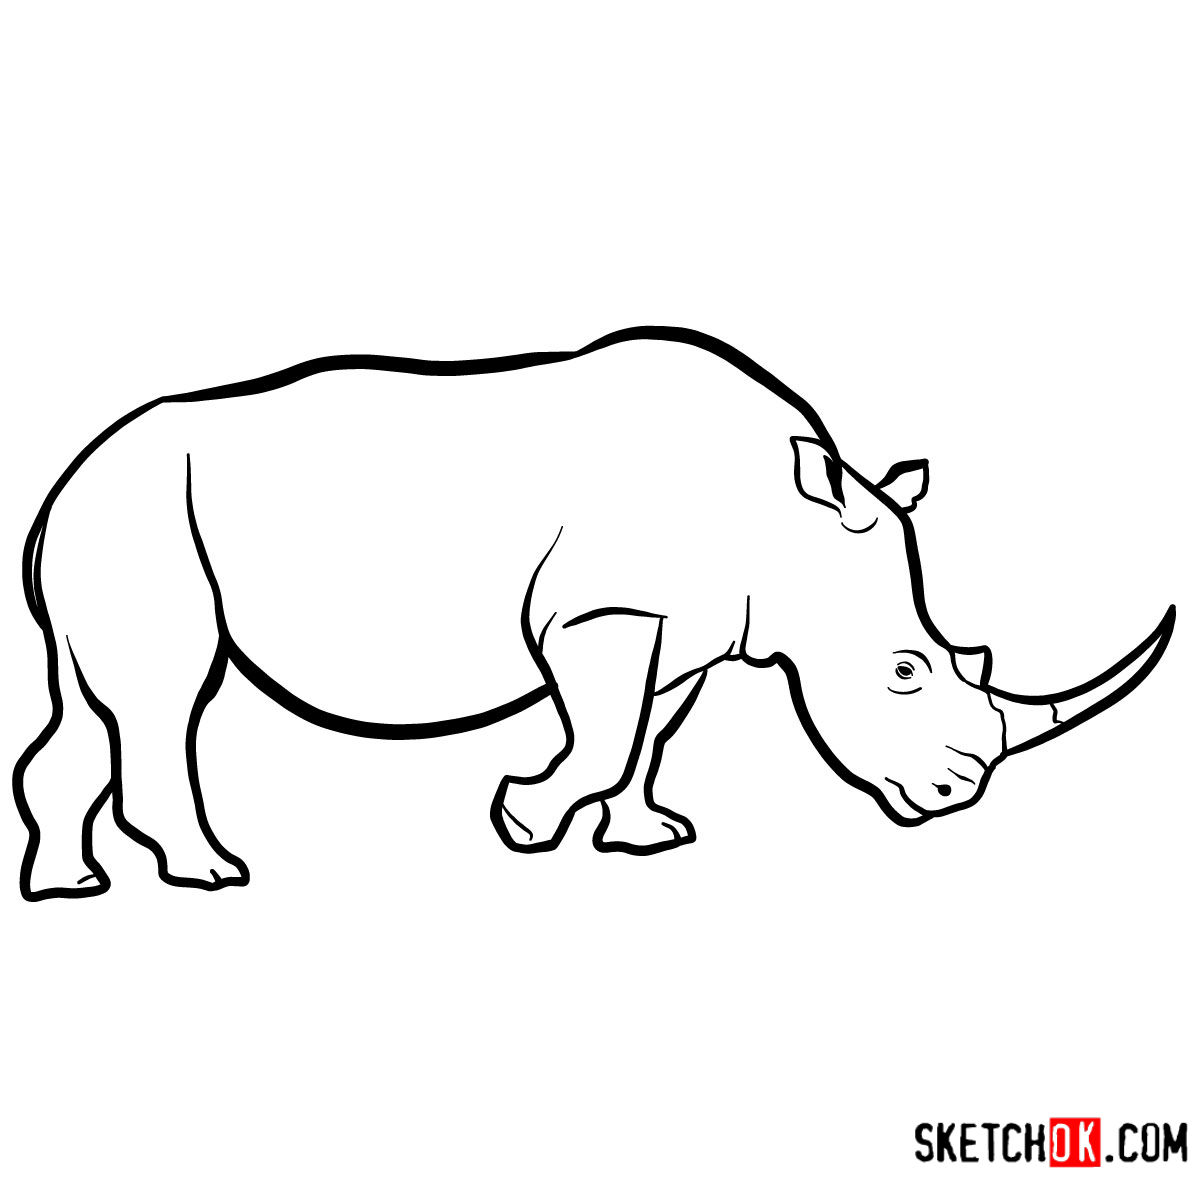 How to draw a Rhinoceros